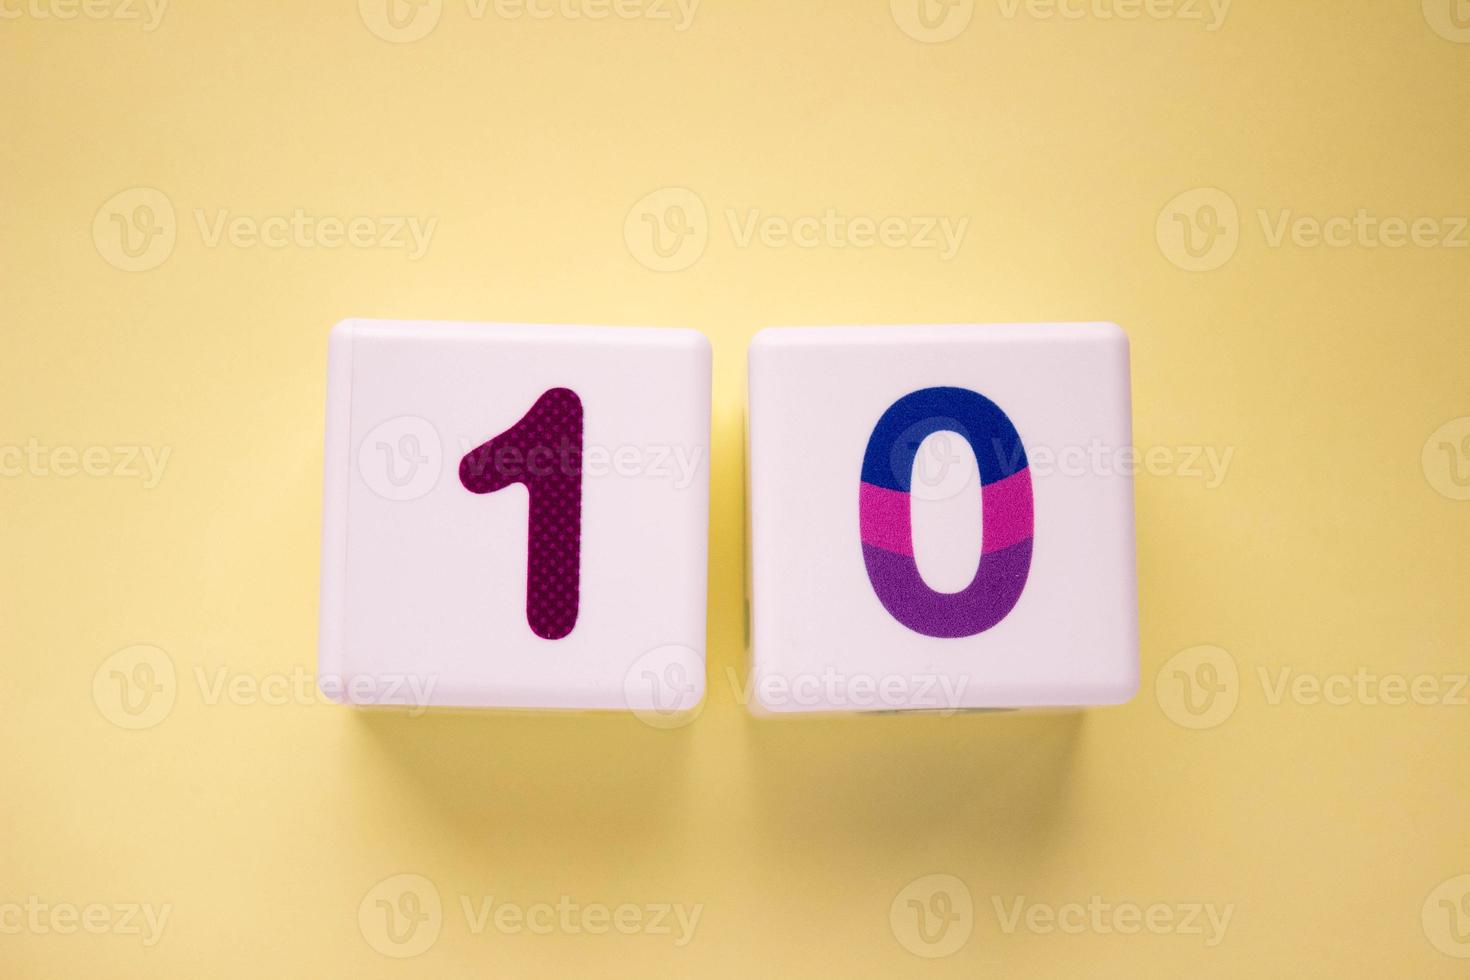 detailopname foto van een wit plastic kubus met een paars aantal 10 Aan een geel achtergrond. voorwerp in de centrum van de foto